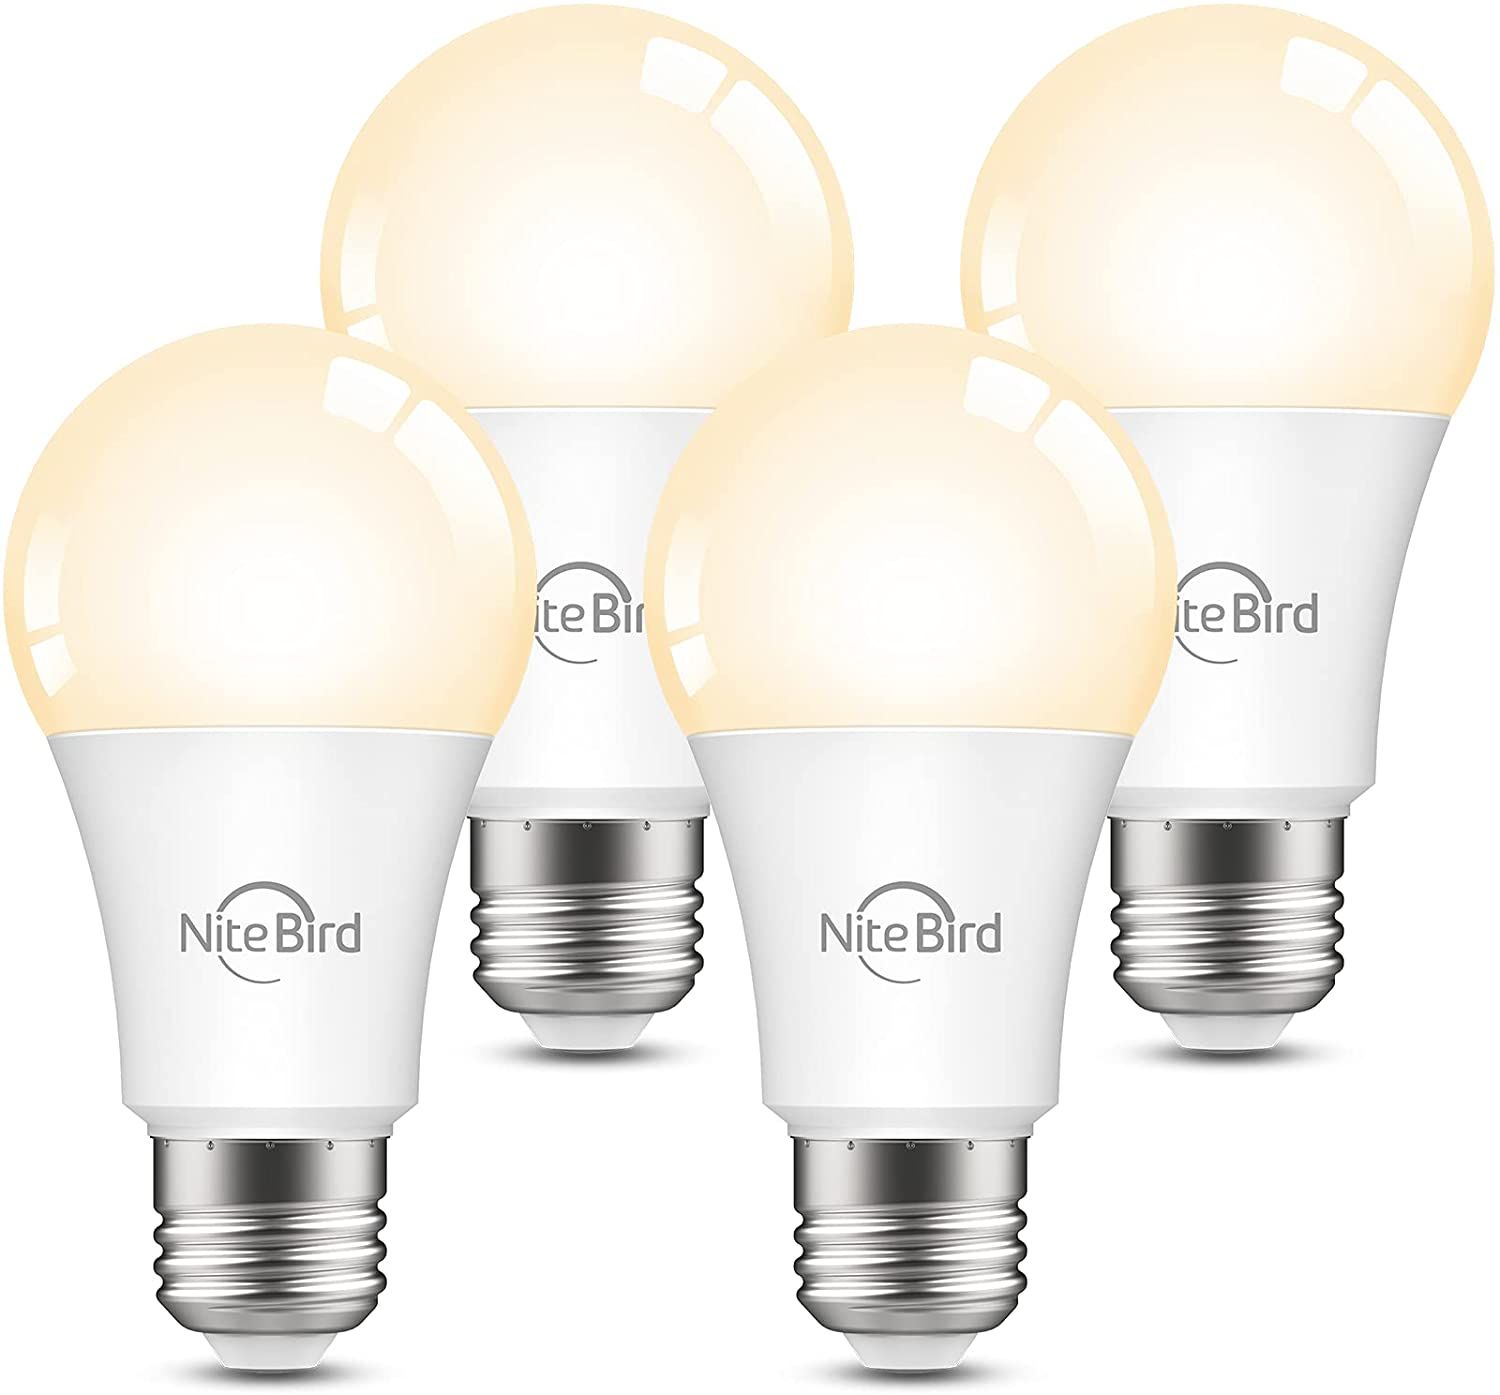 The 7 Best Smart Light Bulbs